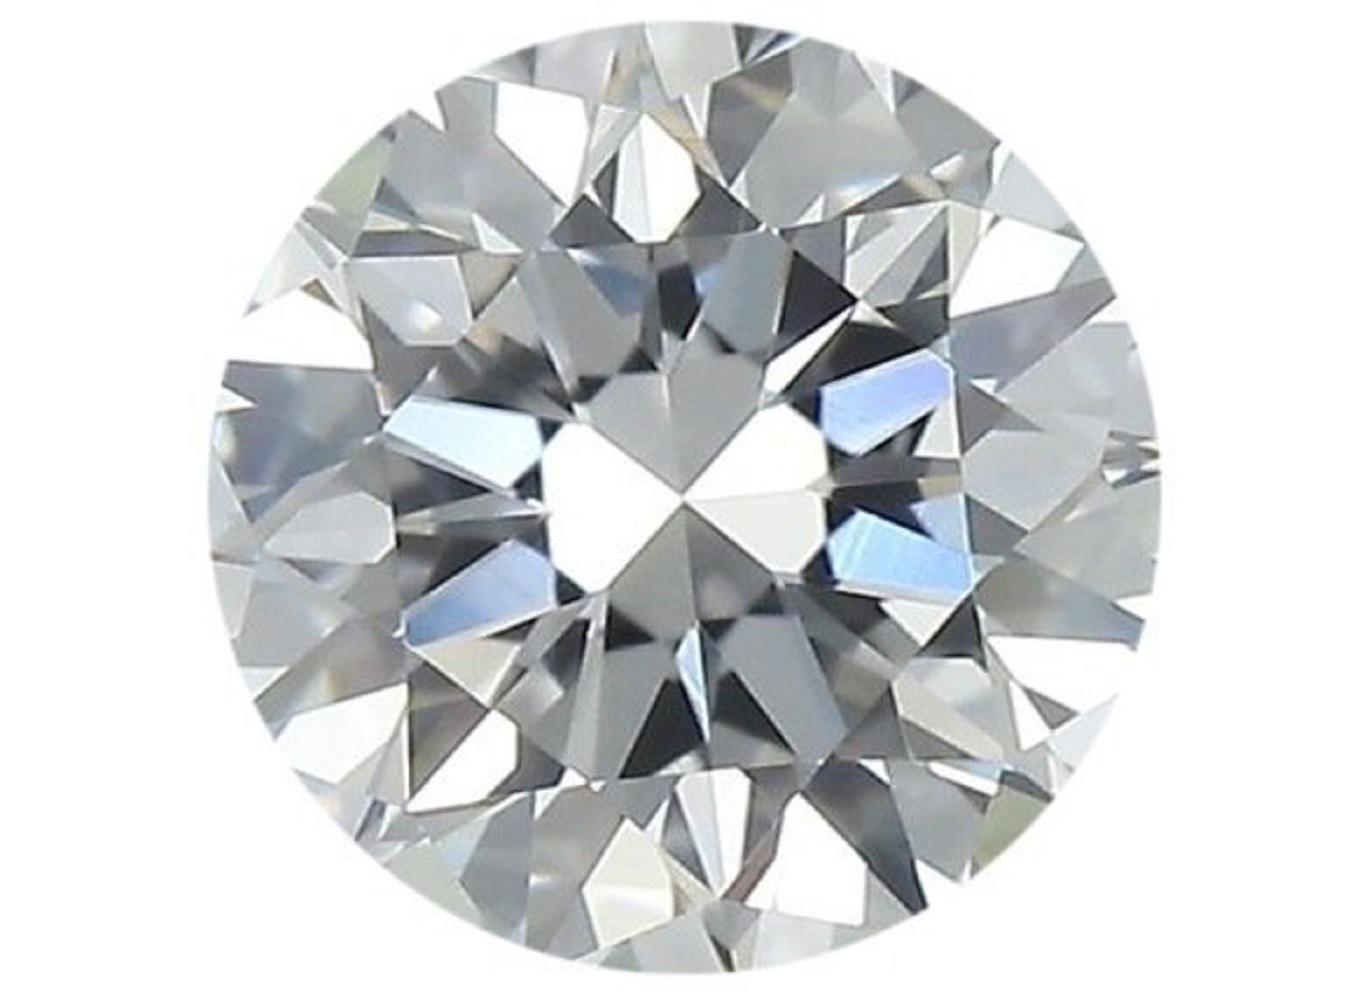 1 funkelnder natürlicher runder Brillant von 1,04 Karat D IF mit hervorragendem Schliff. Dieser Diamant wird mit IGI-Zertifikat und Laserbeschriftungsnummer geliefert.

SKU: MKN-219
IGI 557255266